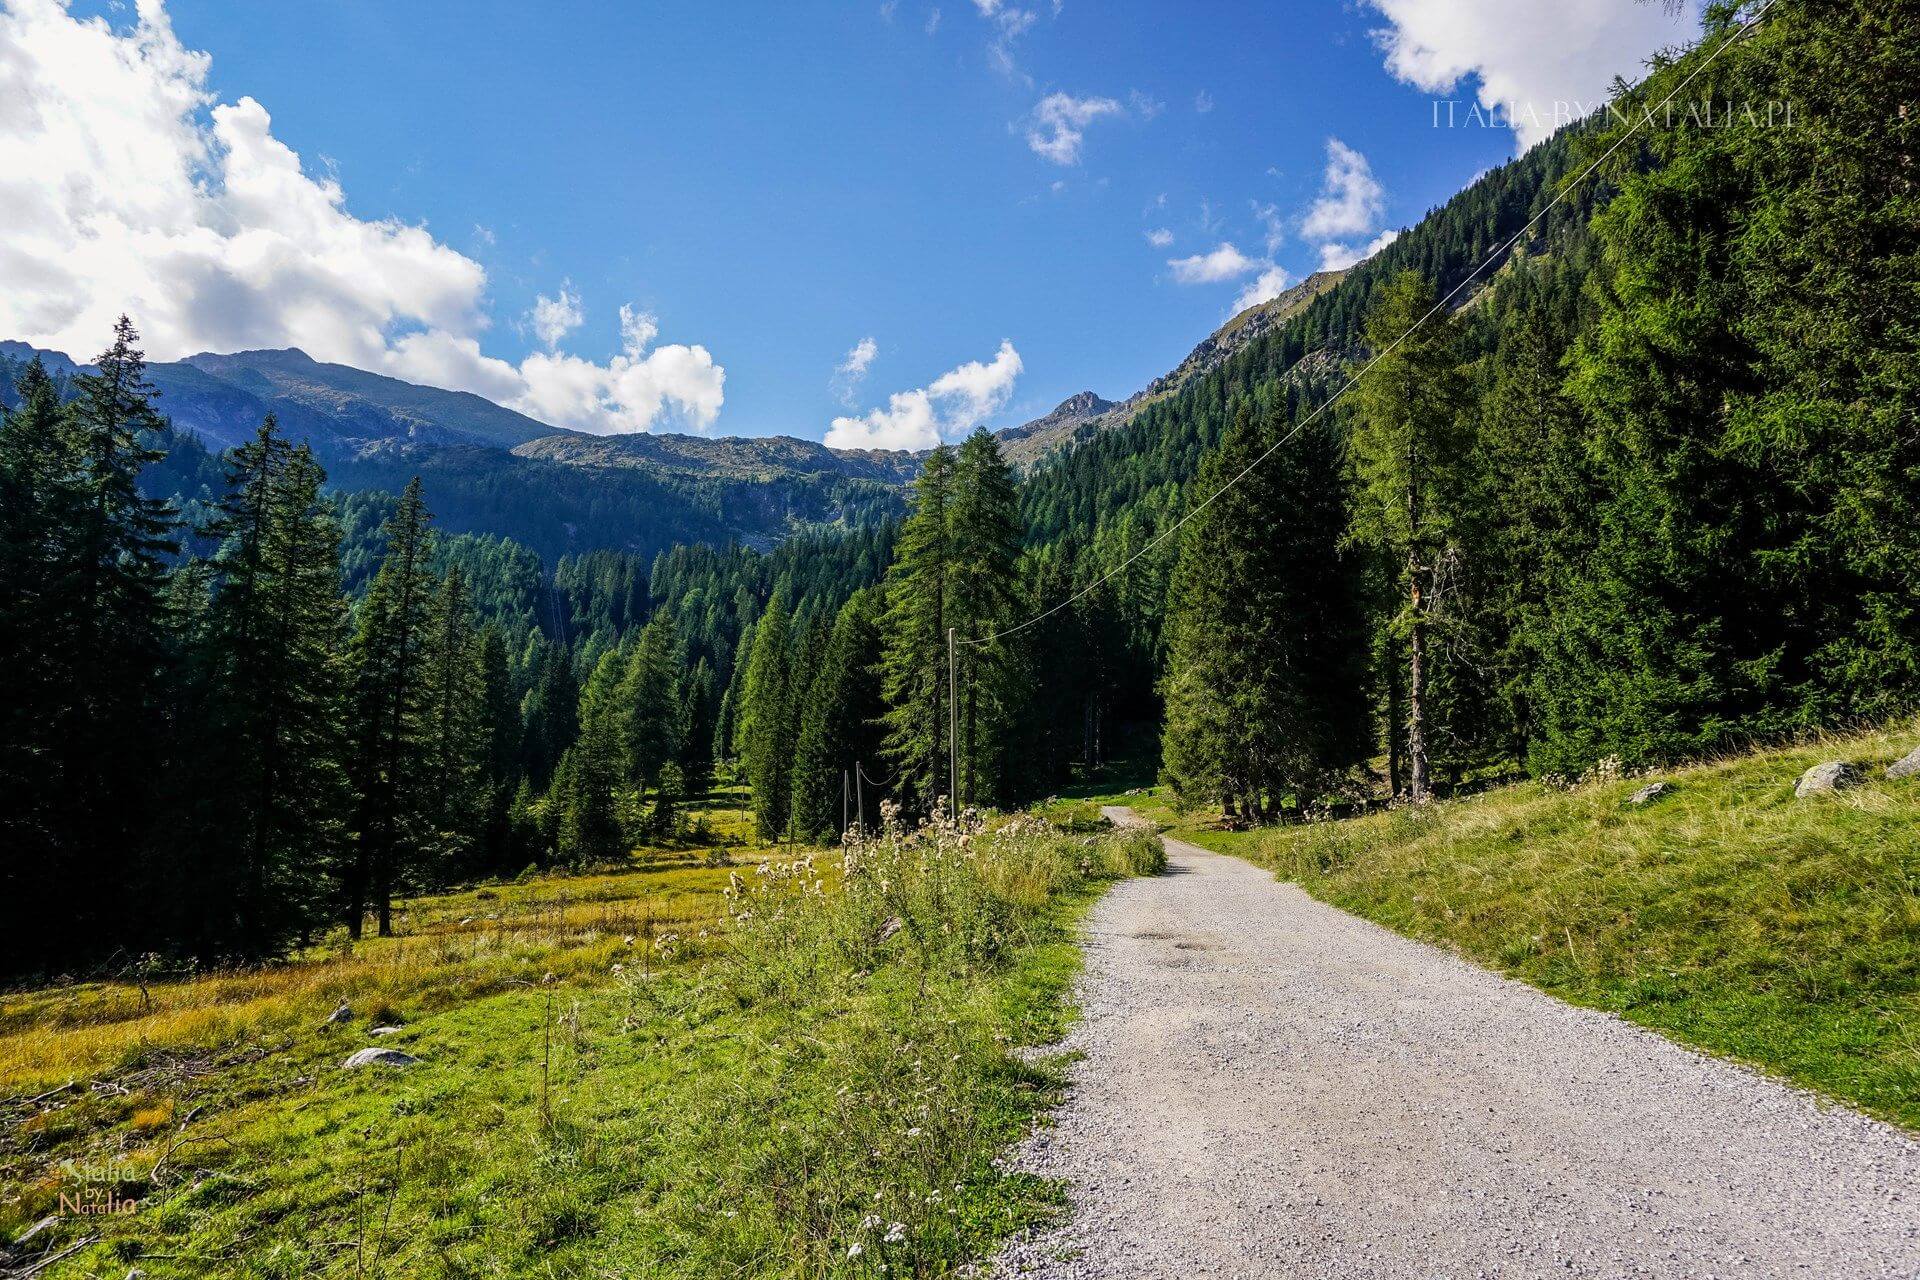 Jezioro Nambino łatwy szlak Park Adamello Brenta Madonna di Campiglio włoskie Alpy Retyckie nambino lake easy trail